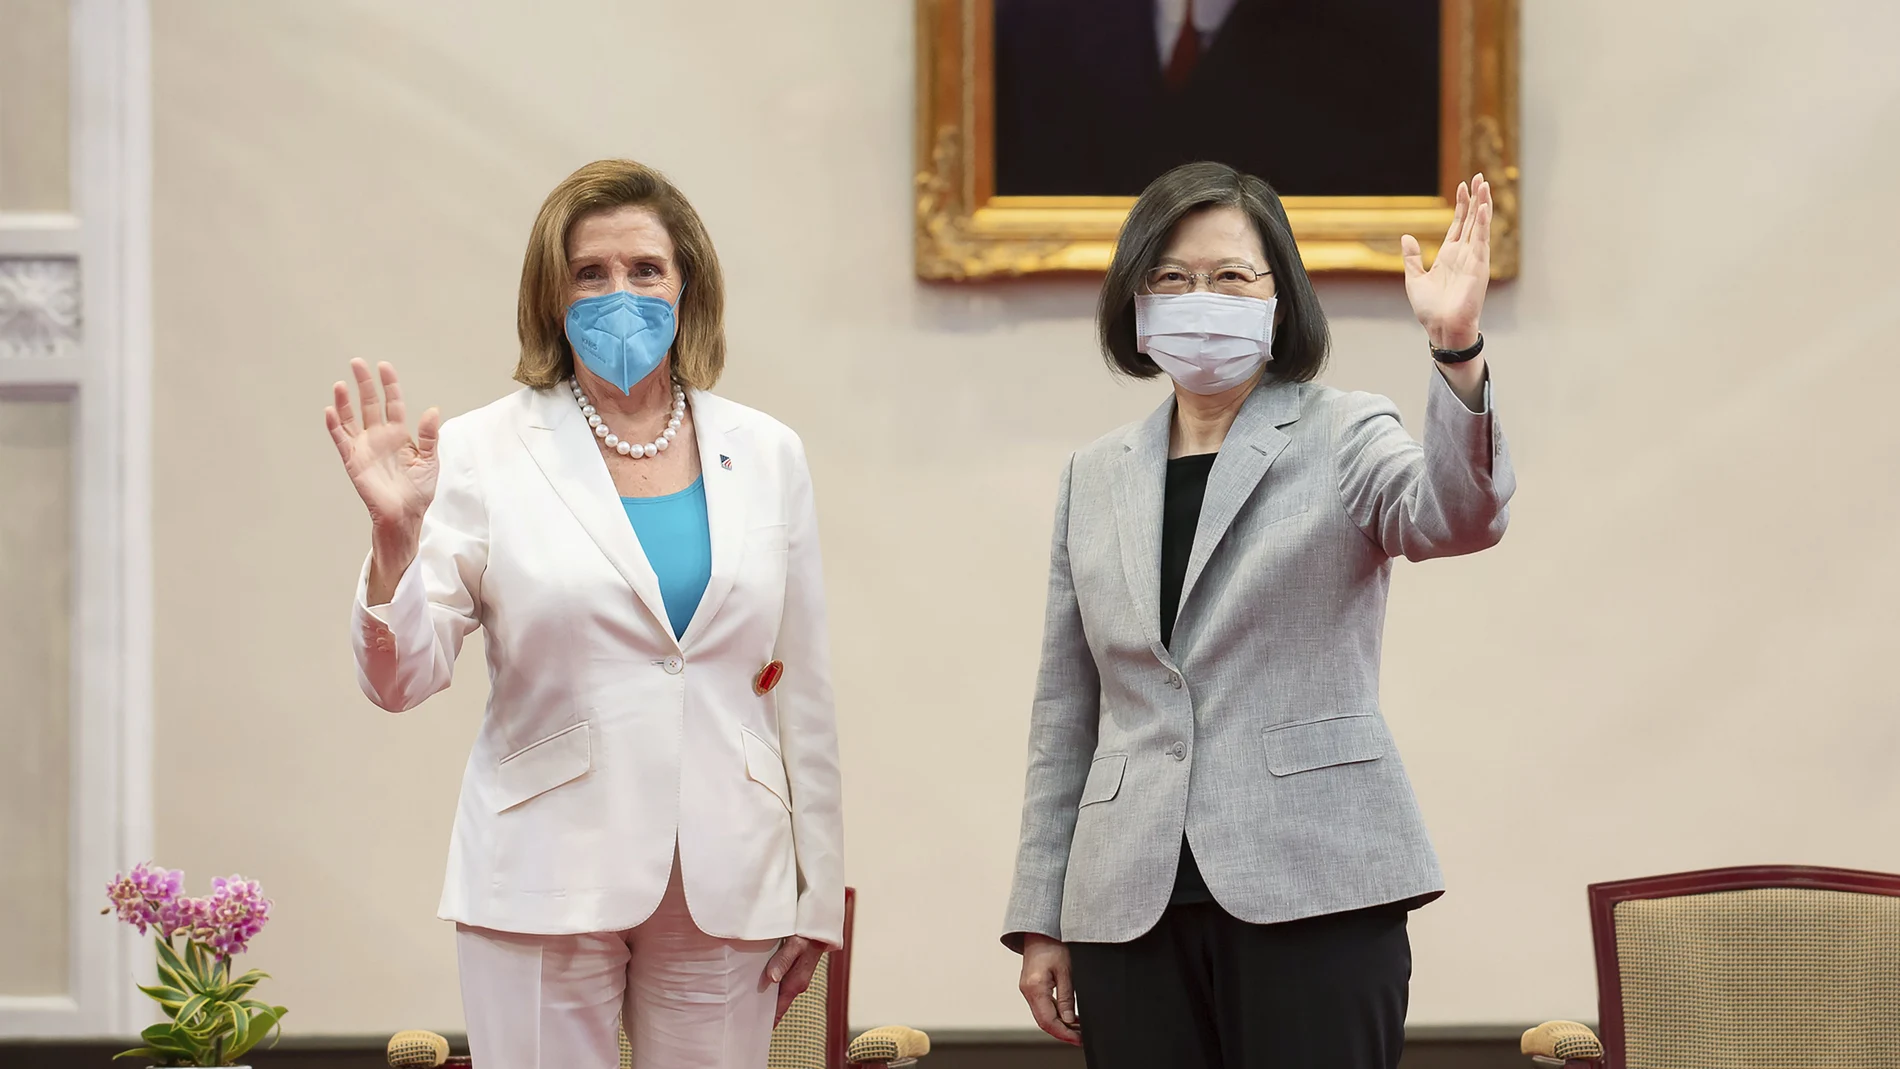 La presidenta de la Cámara de Representantes de Estados Unidos, Nancy Pelosi, a la izquierda, y la presidenta de Taiwán, Tsai Ing-wen, durante una reunión en Taipei el 3 de agosto